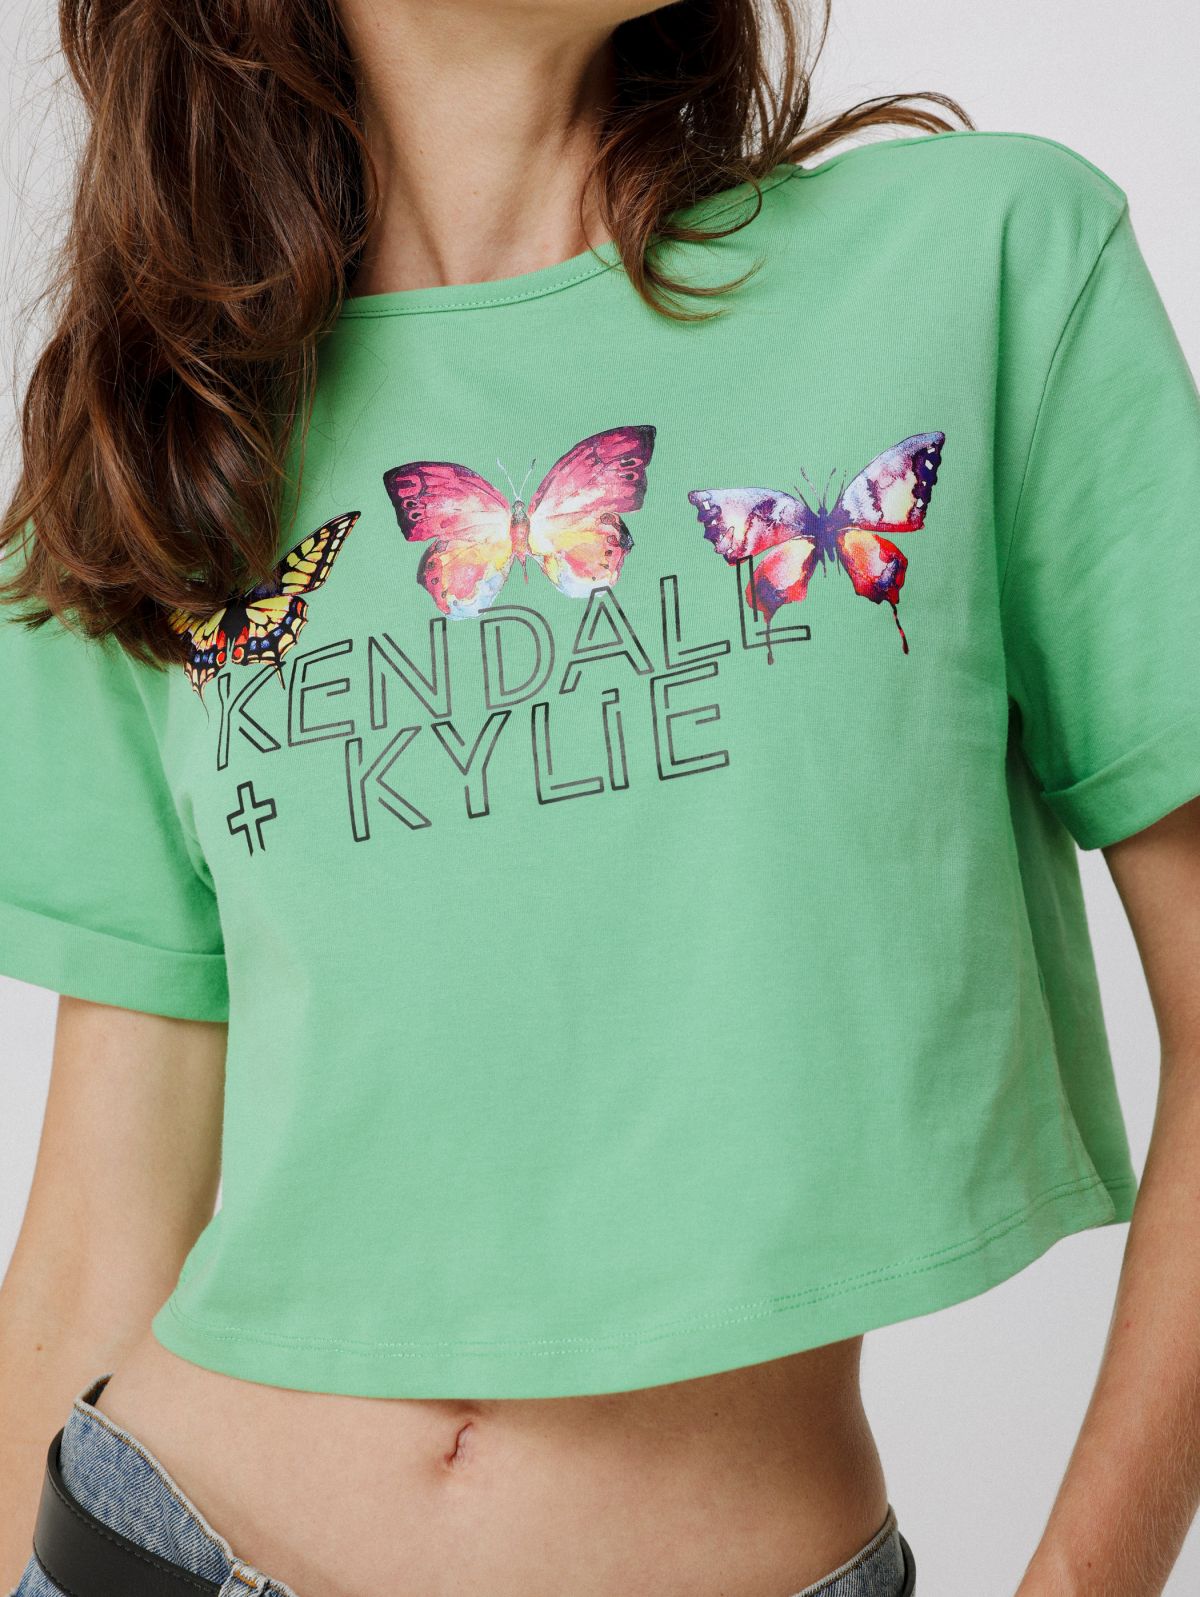  טי שירט קרופ עם הדפס / Kendall + Kylie X terminal x של KENDALL + KYLIE